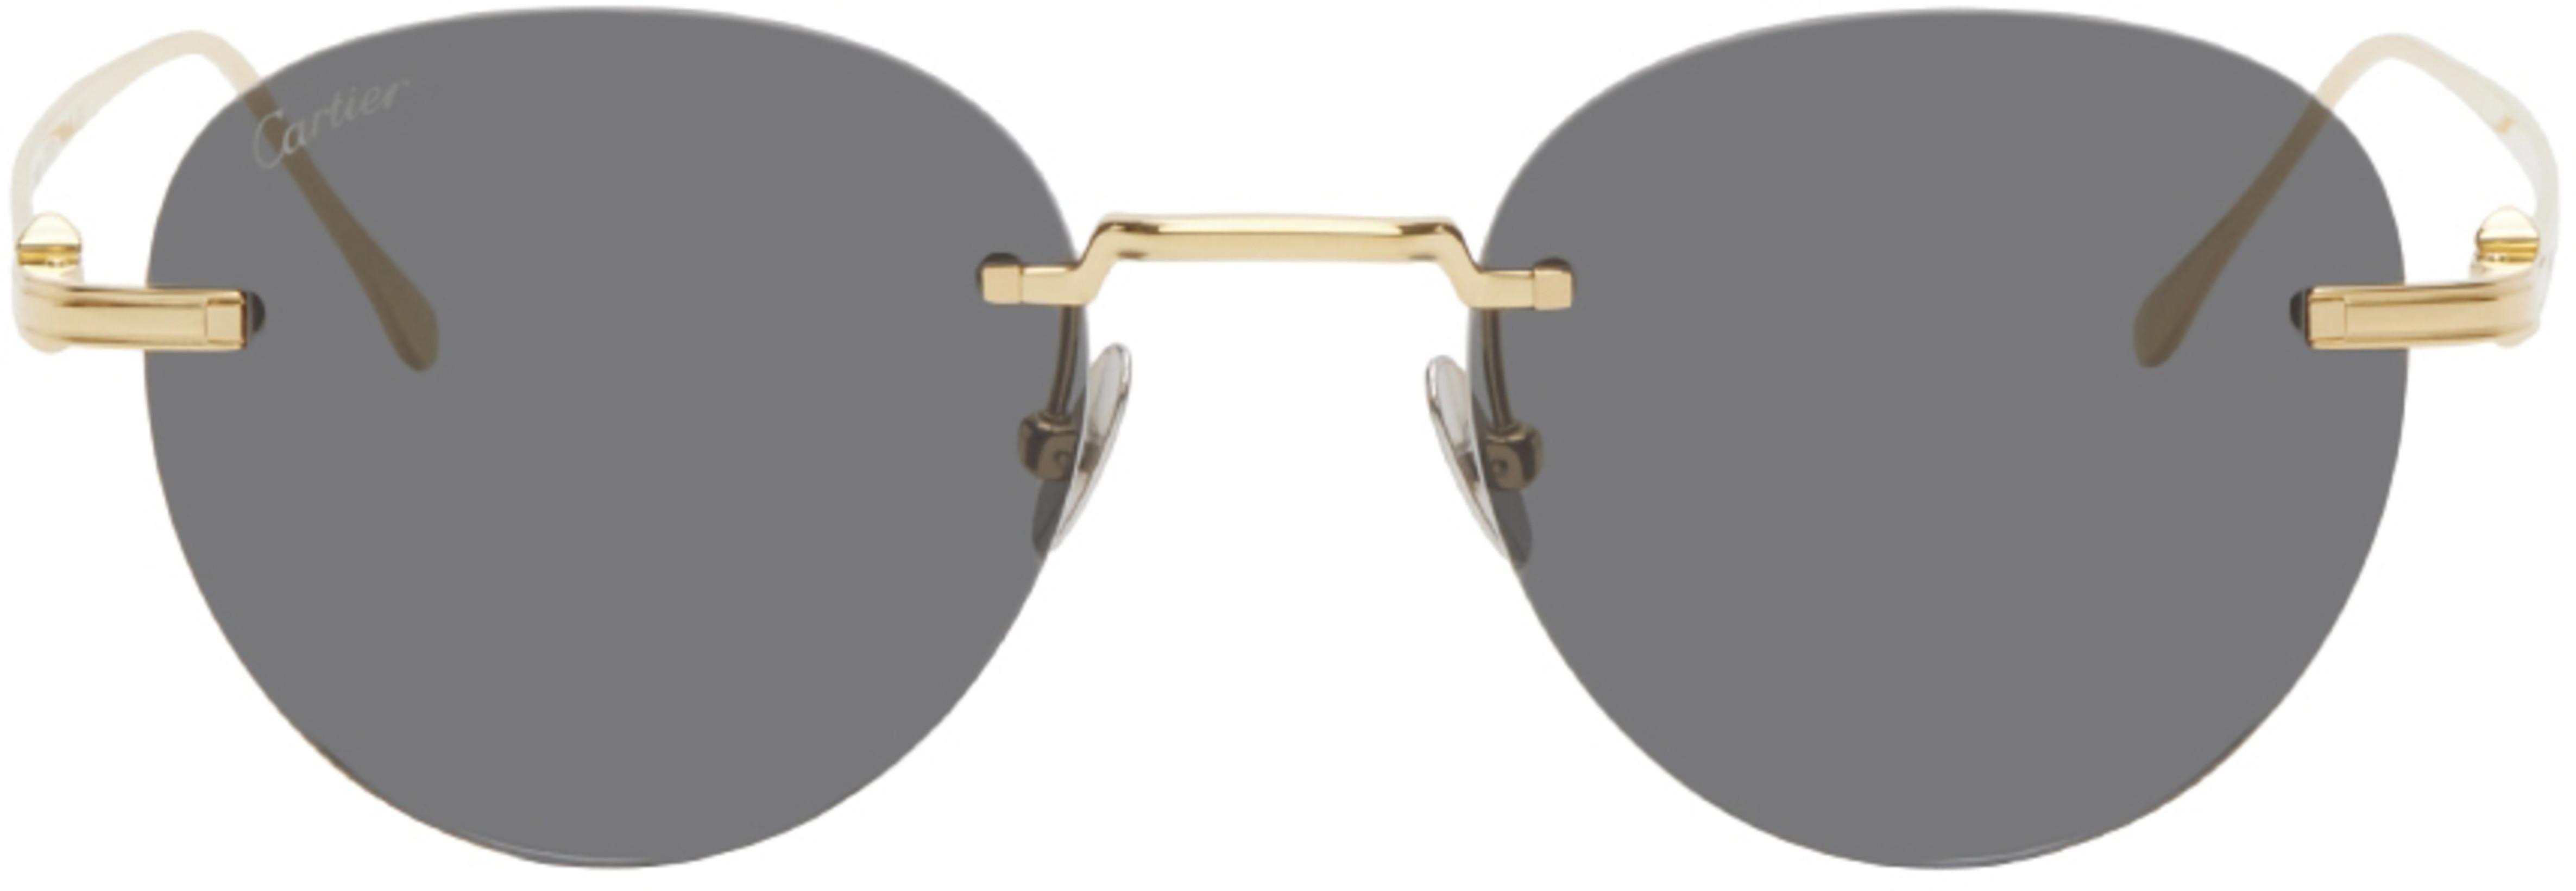 Gold 'Pasha de Cartier' Rimless Sunglasses by CARTIER